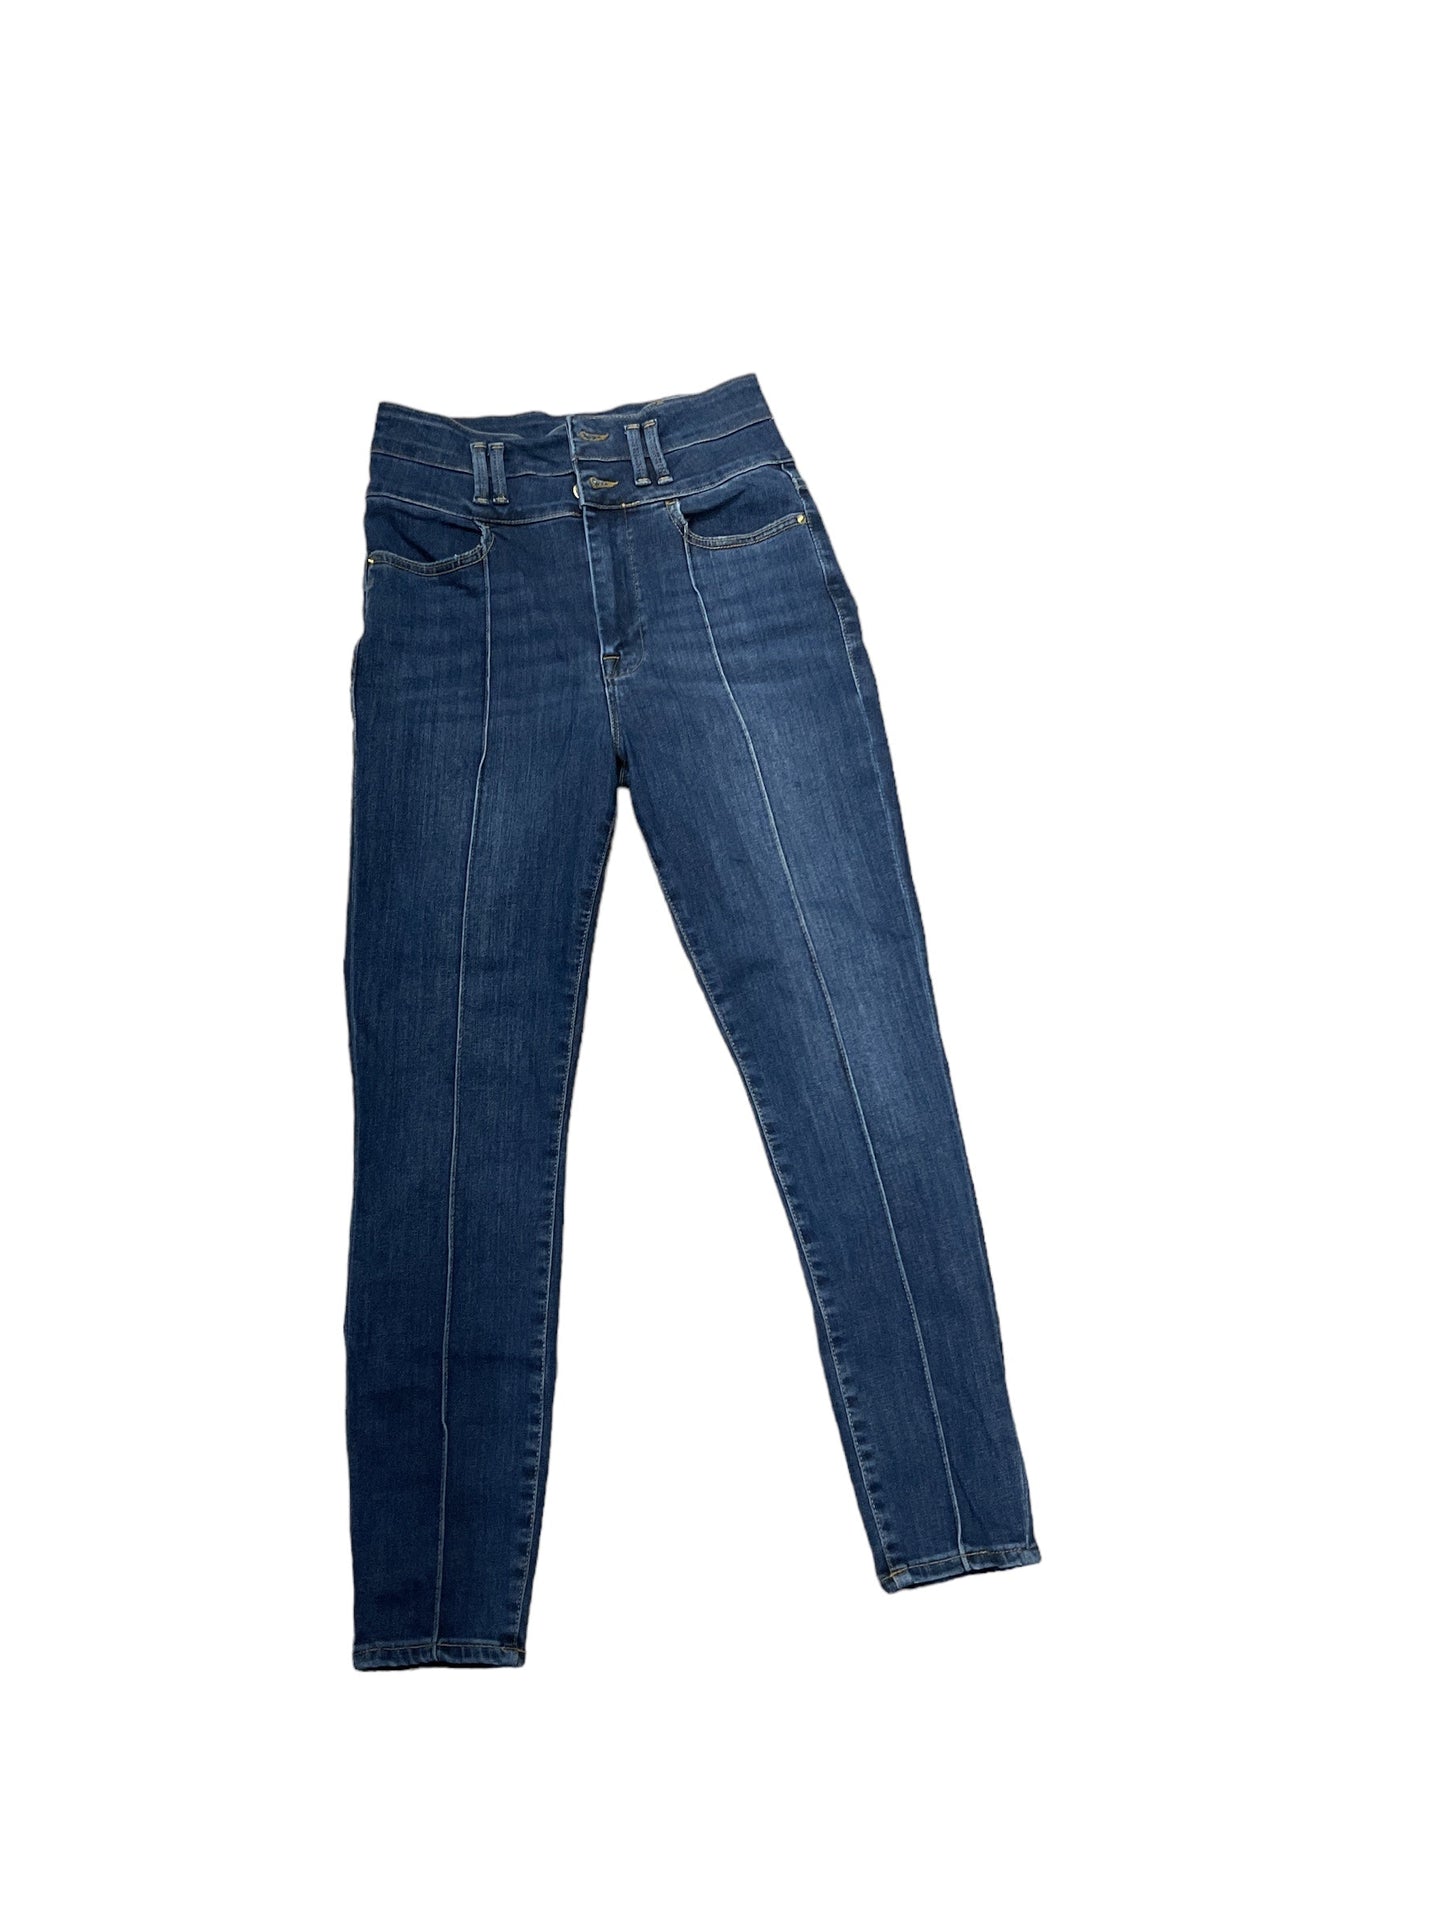 Blue Denim Jeans Designer Frame, Size 4